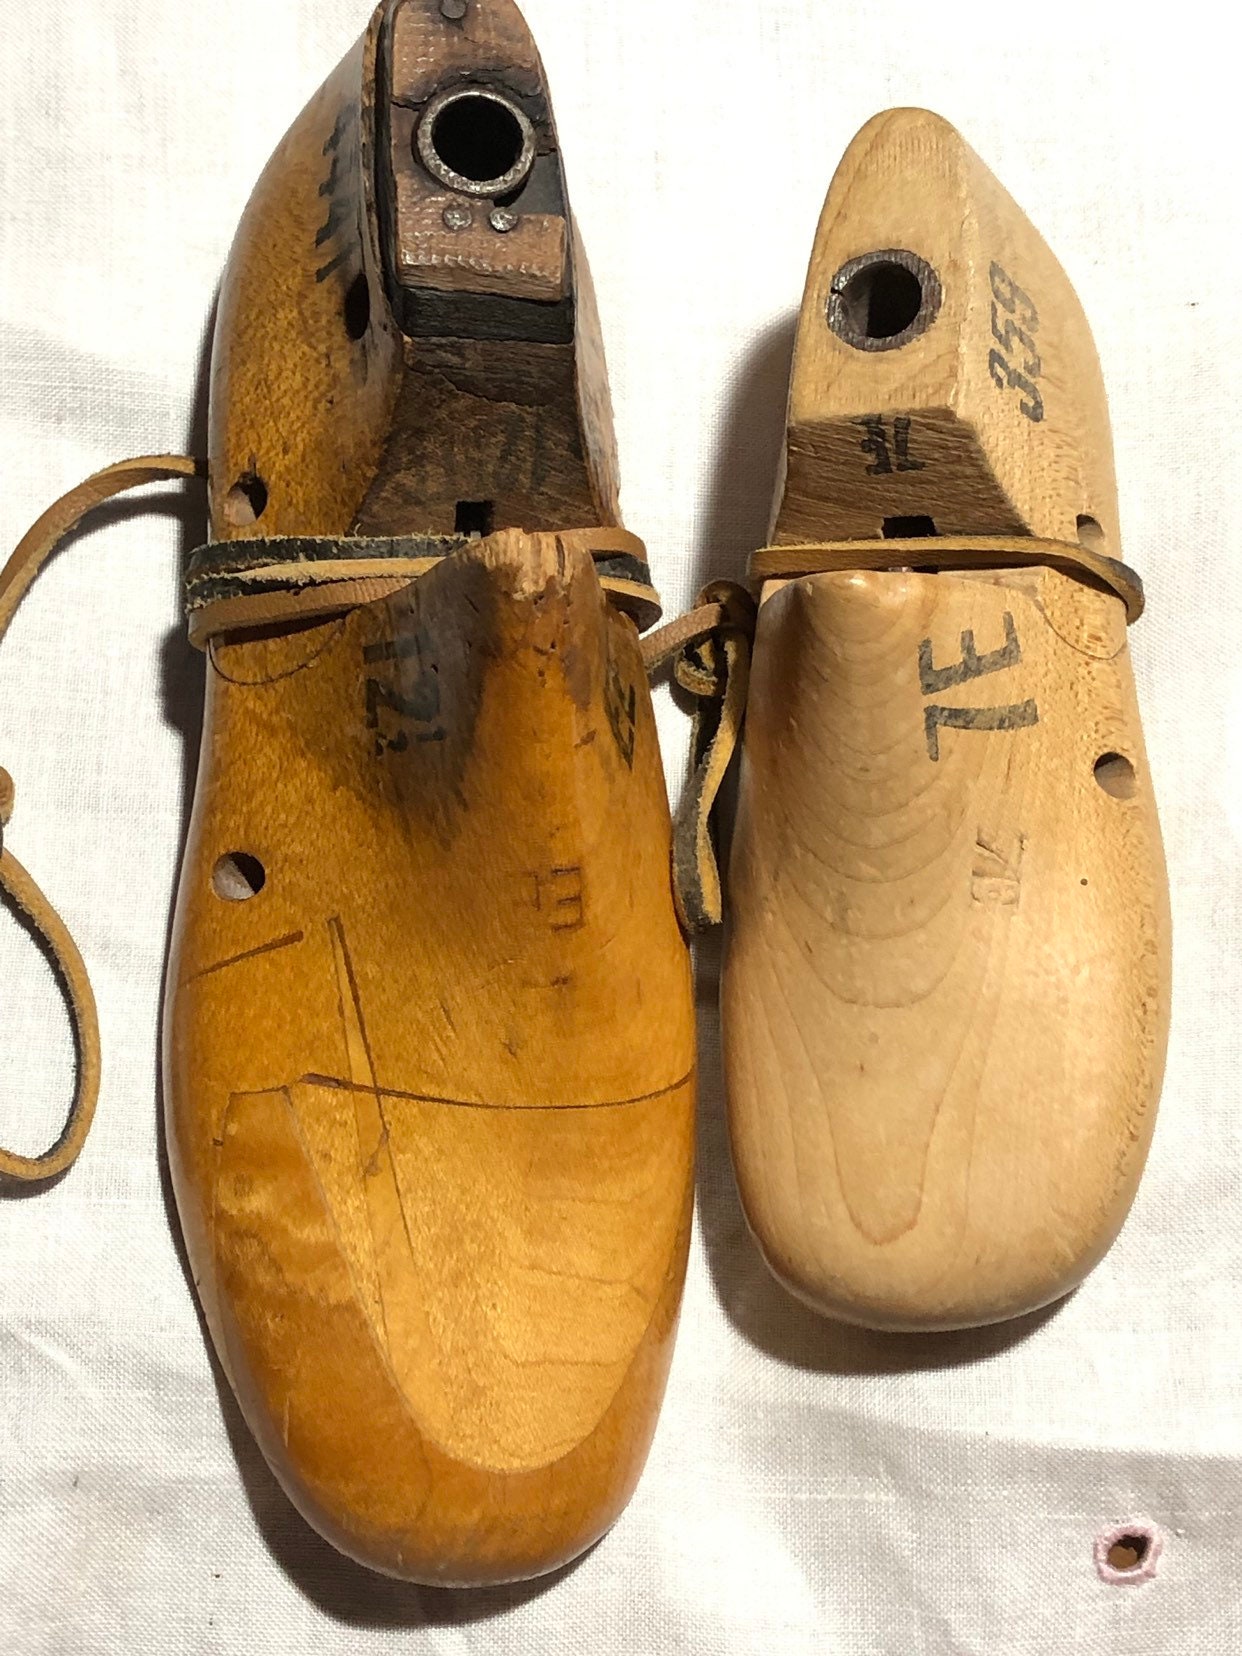 Vintage Vulcan Wooden Cobblers Shoe Form - Retro Shoe Lasts - Shoe ...